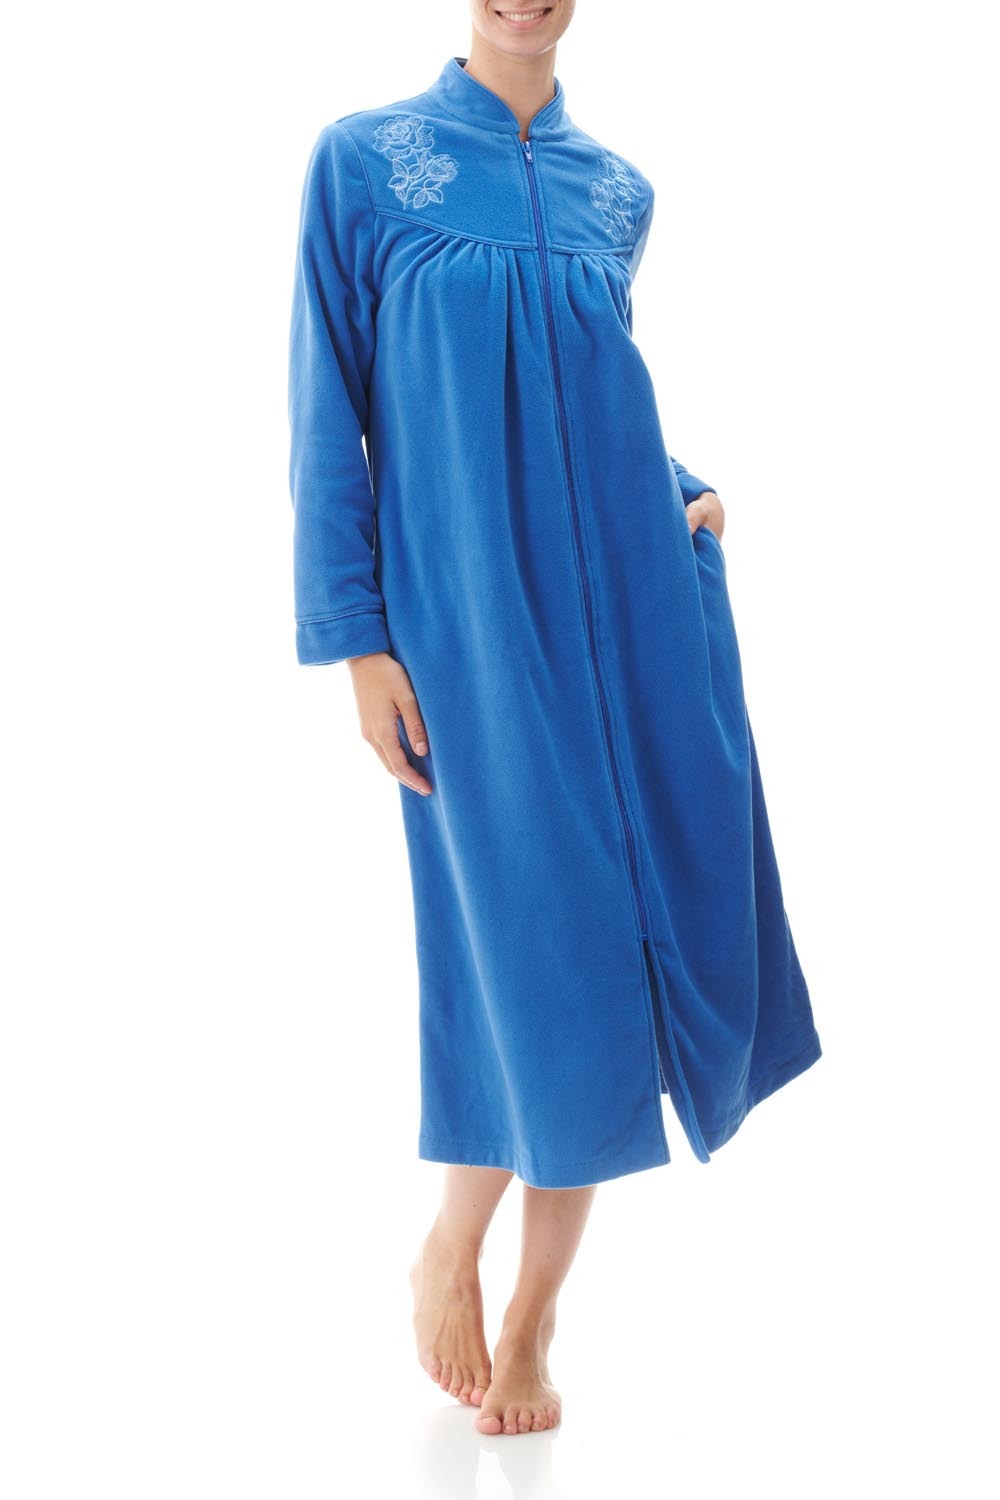 Women's Zip Front Bathrobe Soft Warm Long Fleece Plush Robe Plus Size Full  Length Housecoat Sleepwear Dressing Gown - Walmart.com